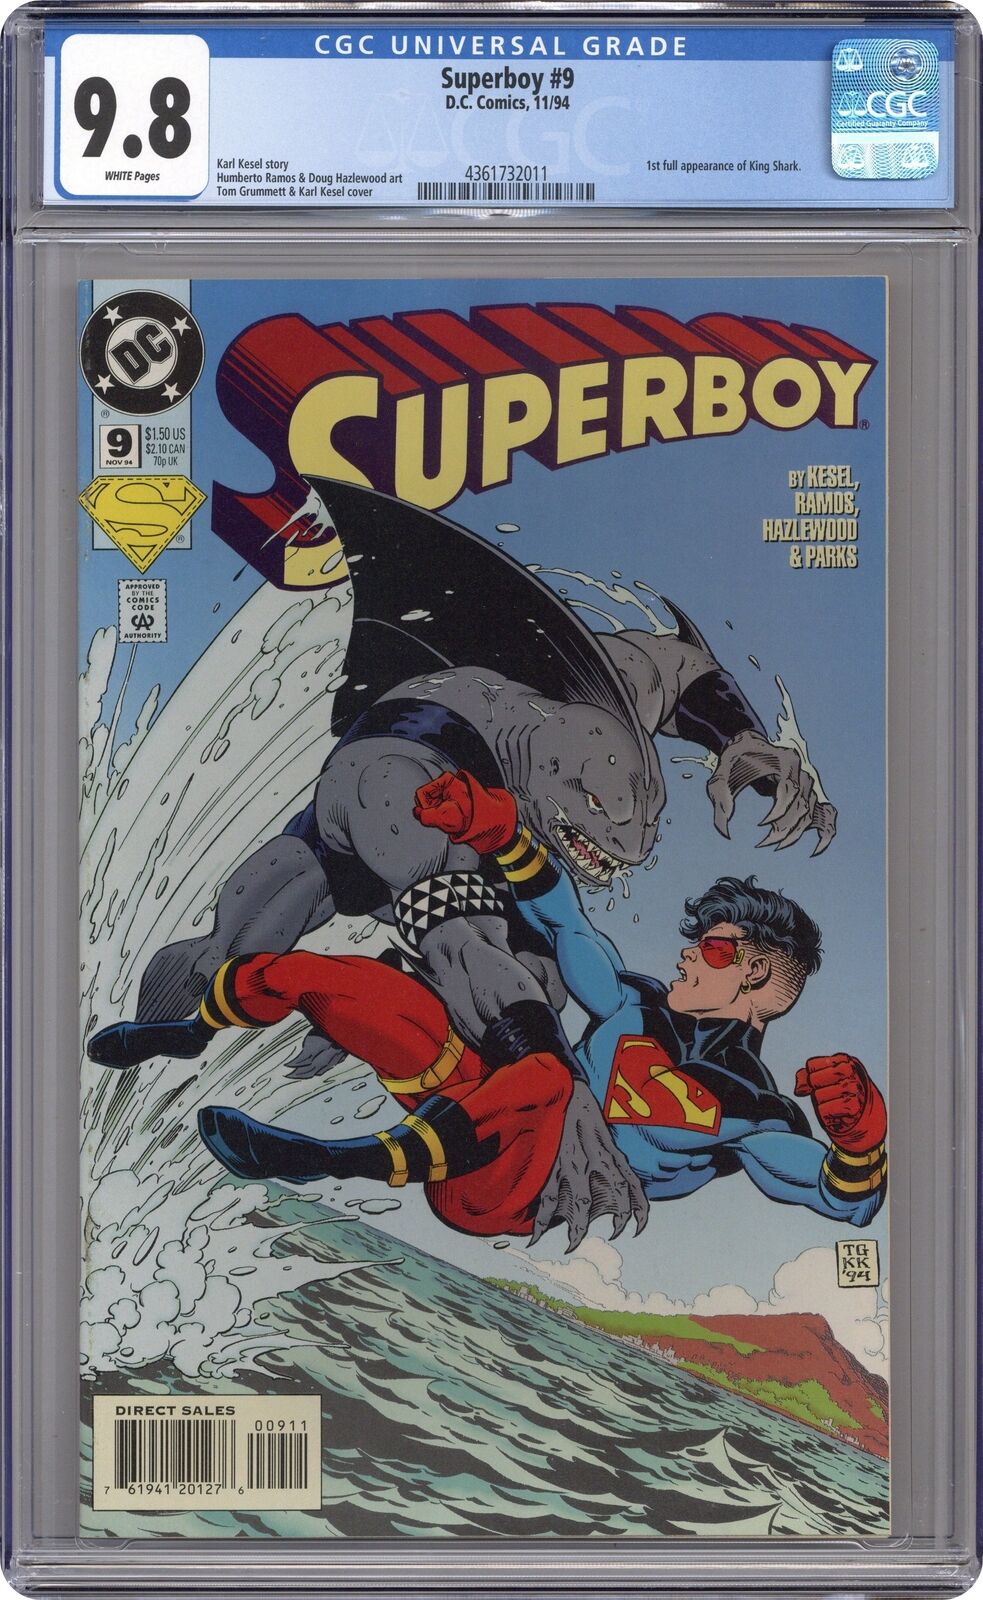 Superboy #9D CGC 9.8 1994 4361732011 1st full app. King Shark